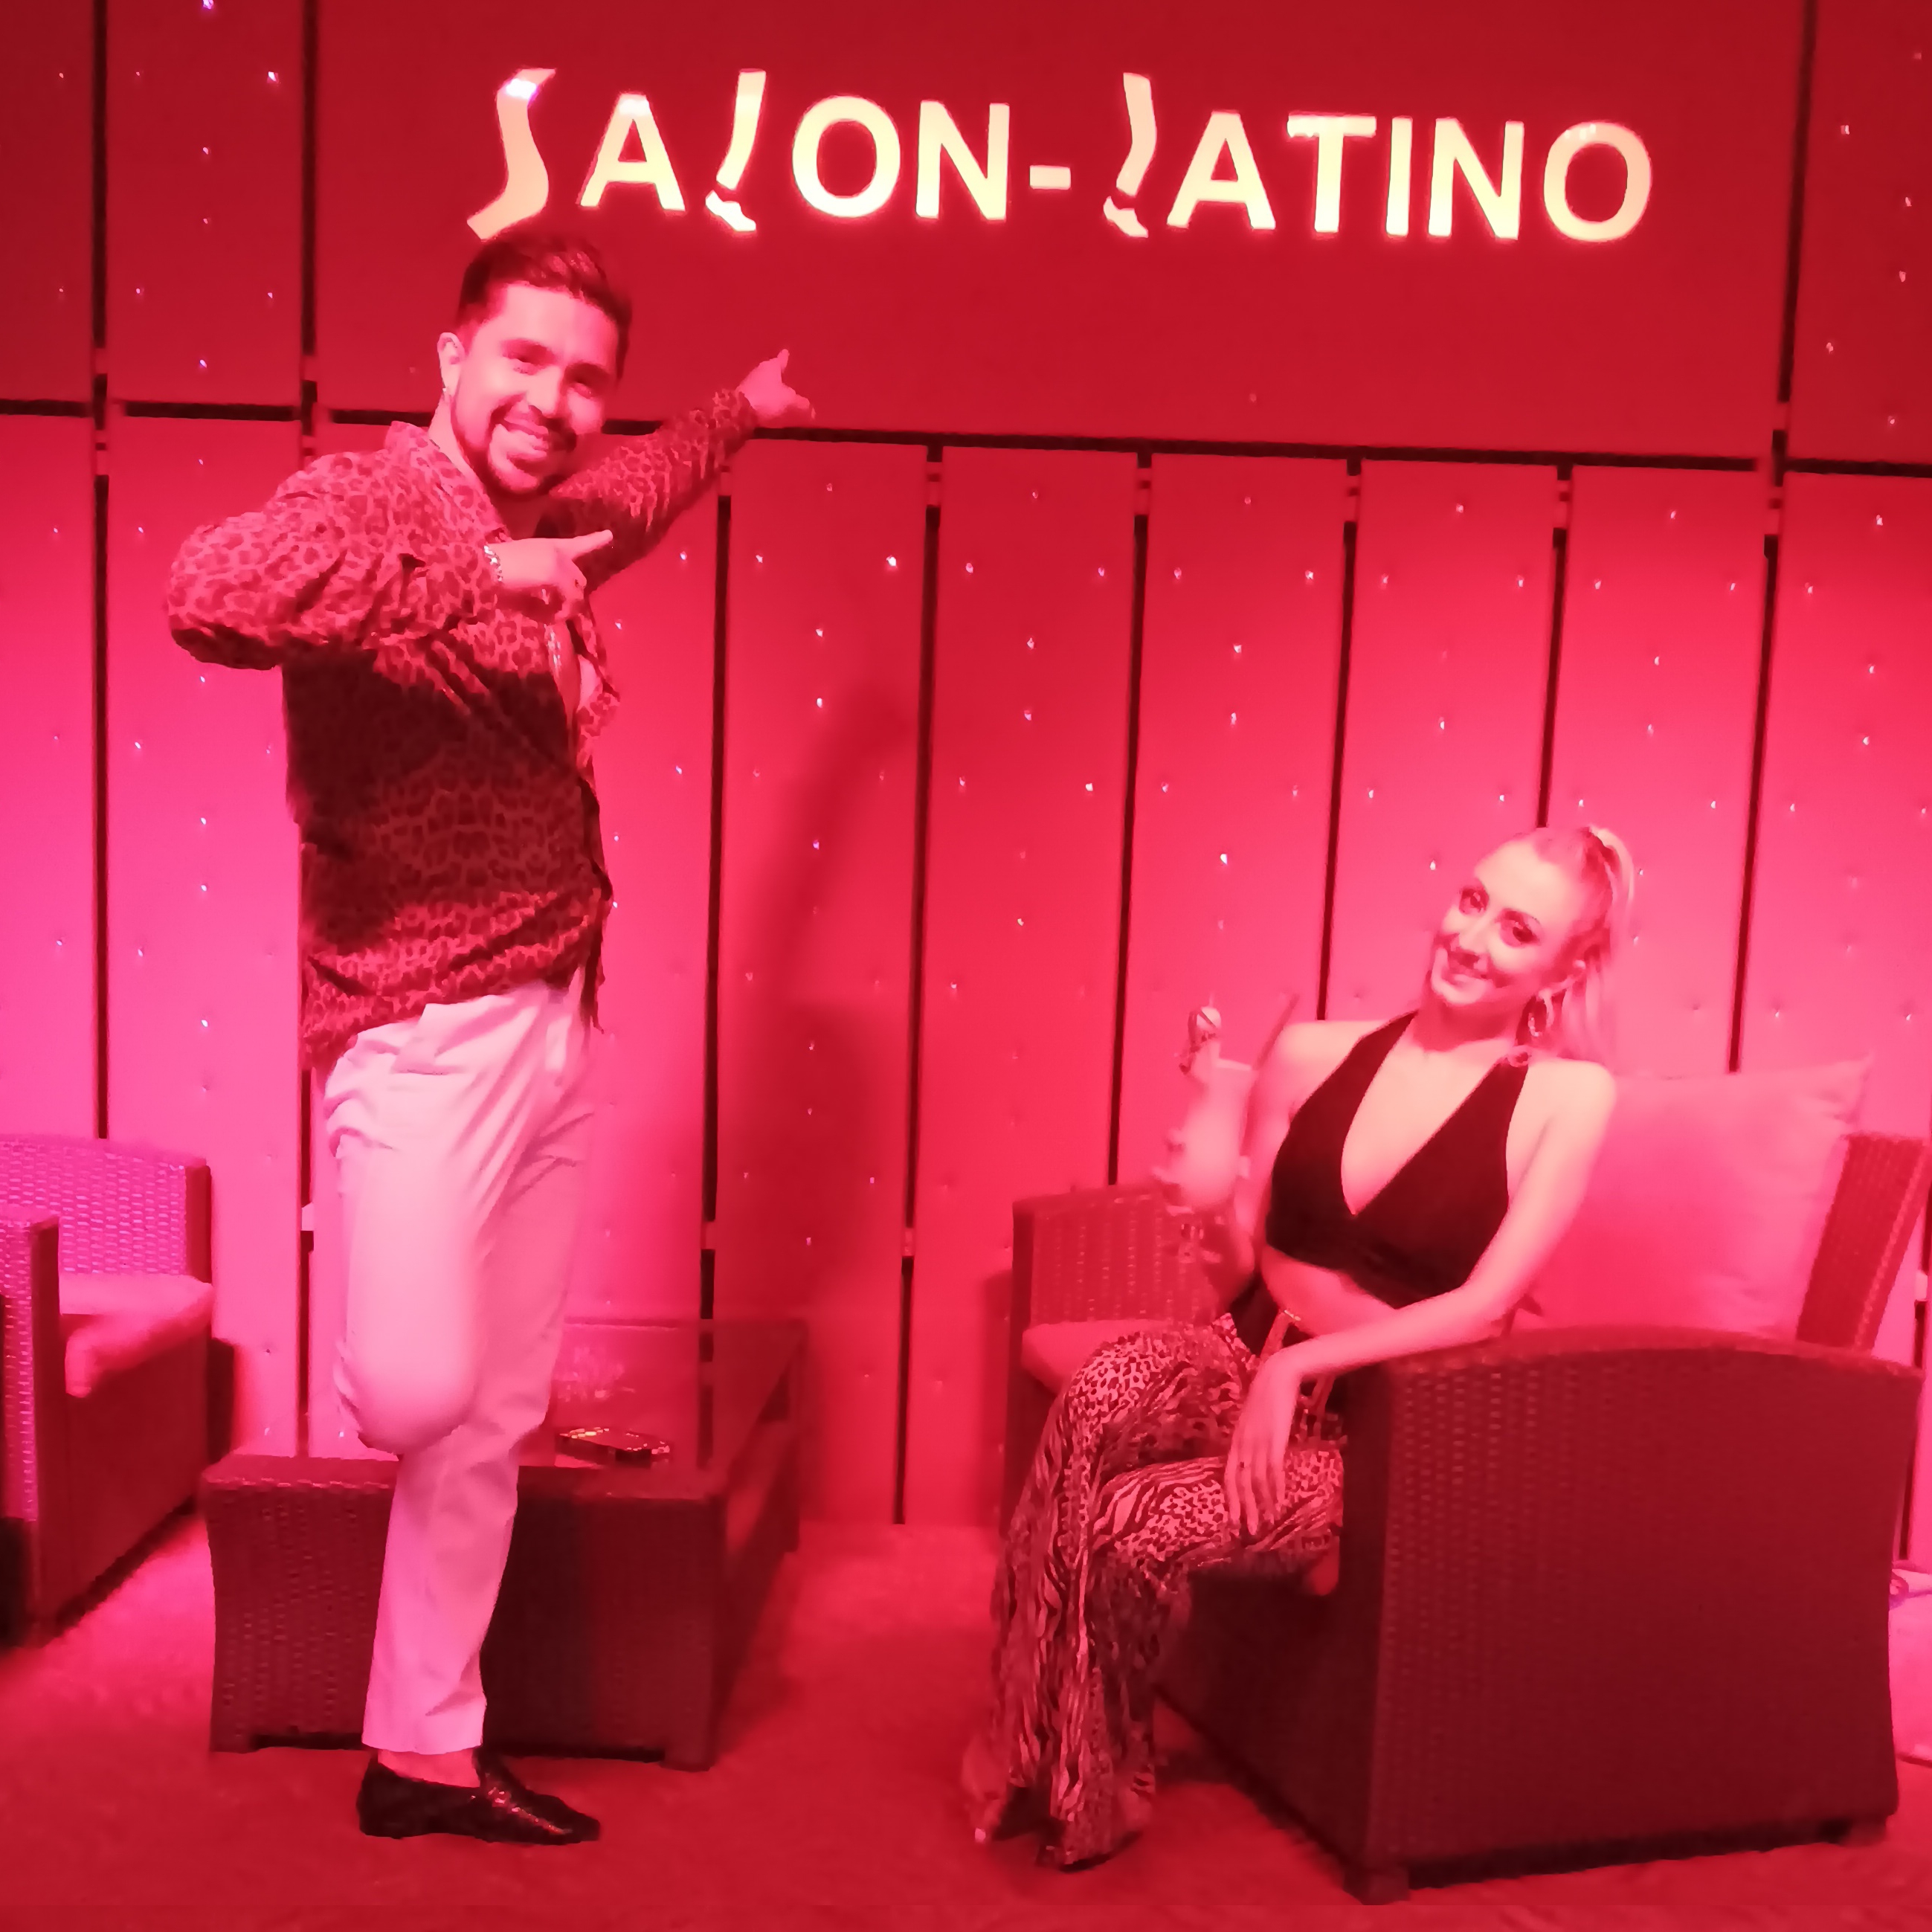 Willi_Jessica-Salon-Latino